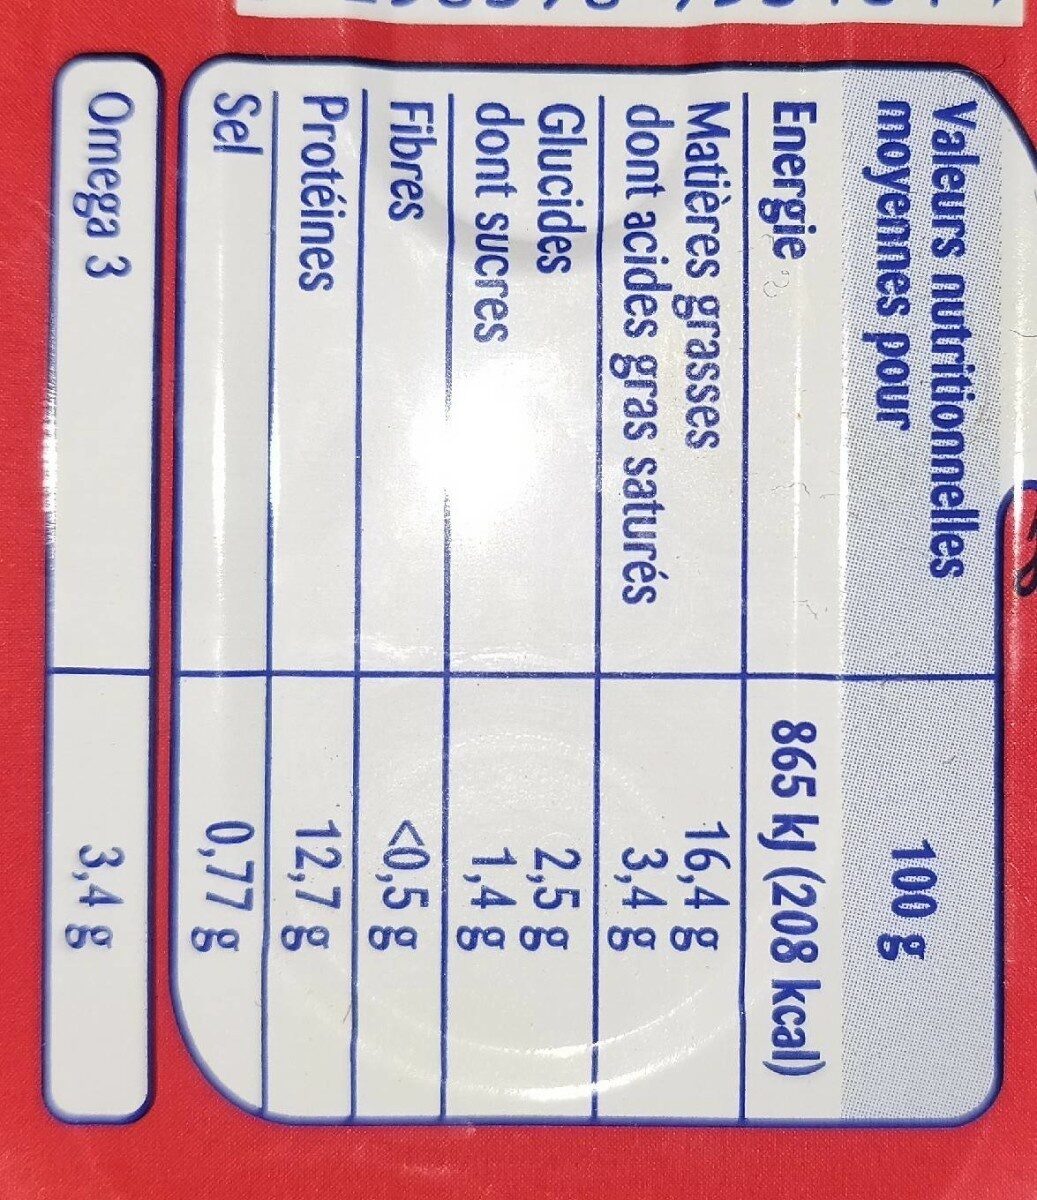 Filets de Maquereaux Tomate - Nutrition facts - fr